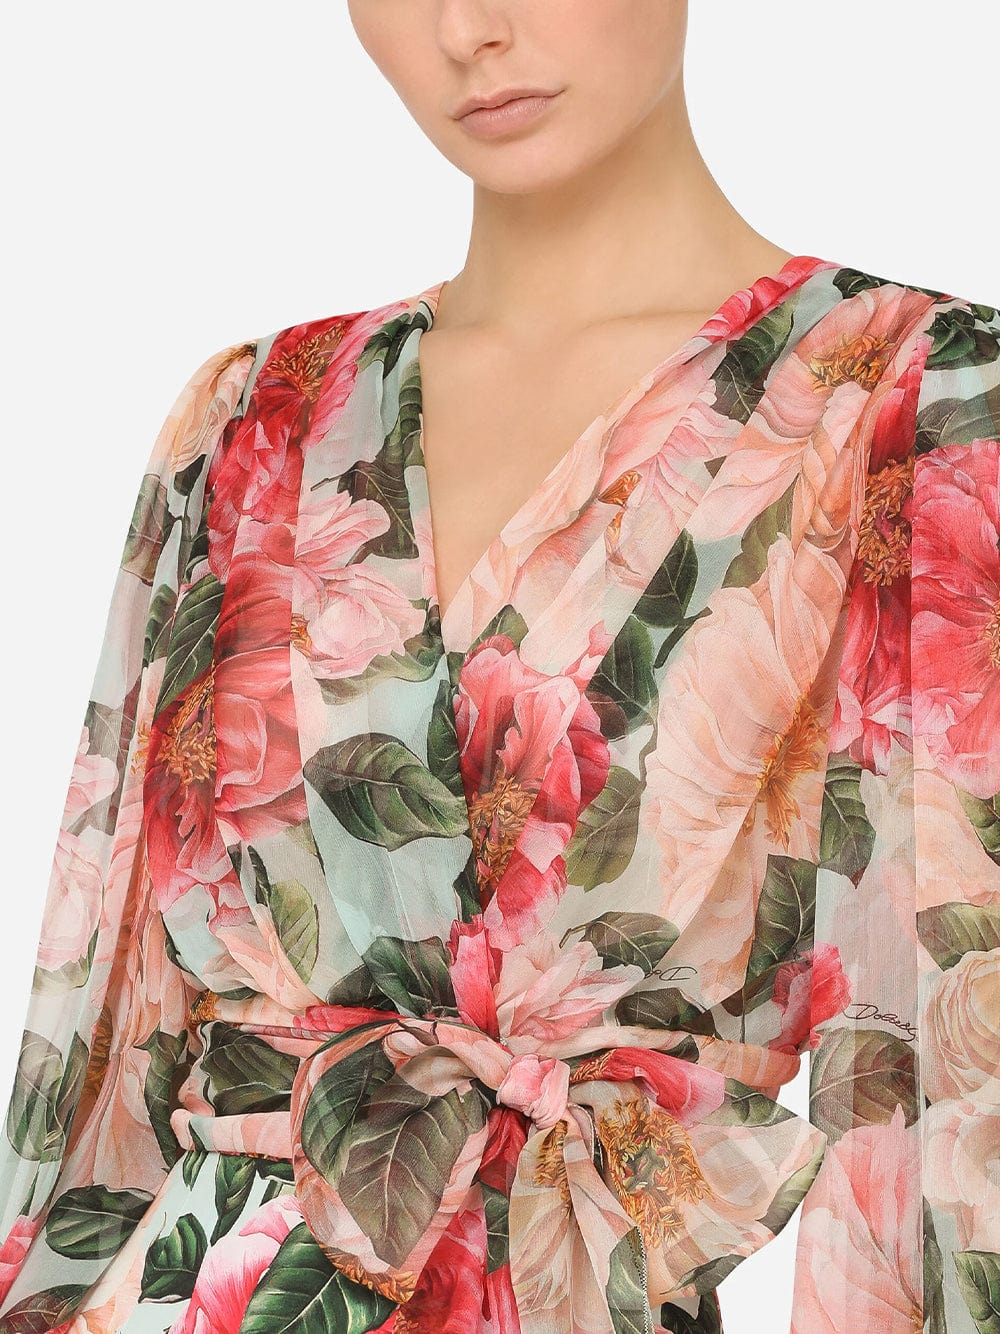 Dolce & Gabbana Floral-Print Wrap-Style Blouse